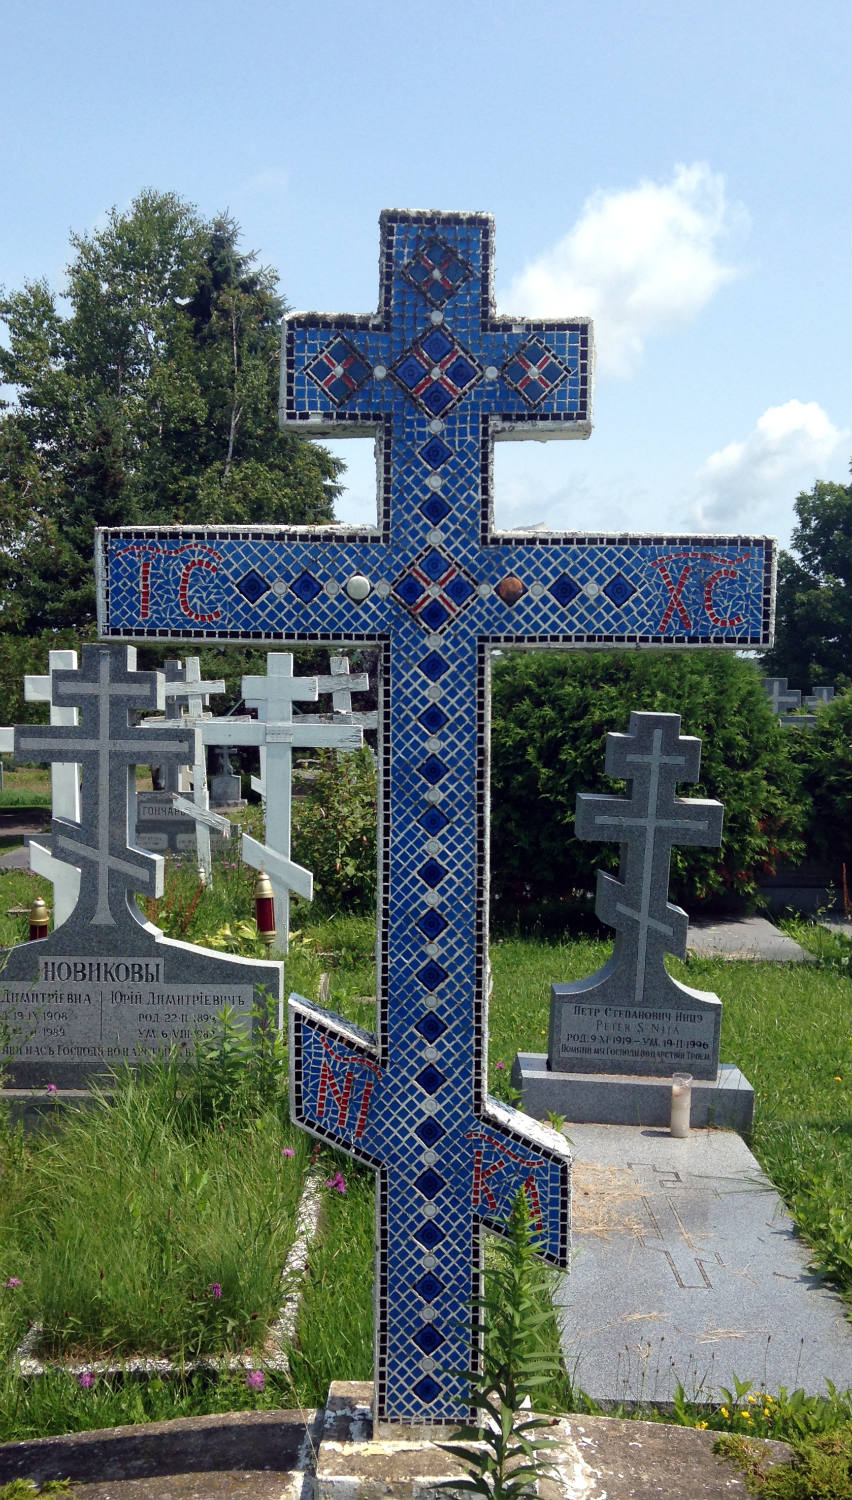 Holy Trinity Monastery - Jordanville, NY tile mosaic cross